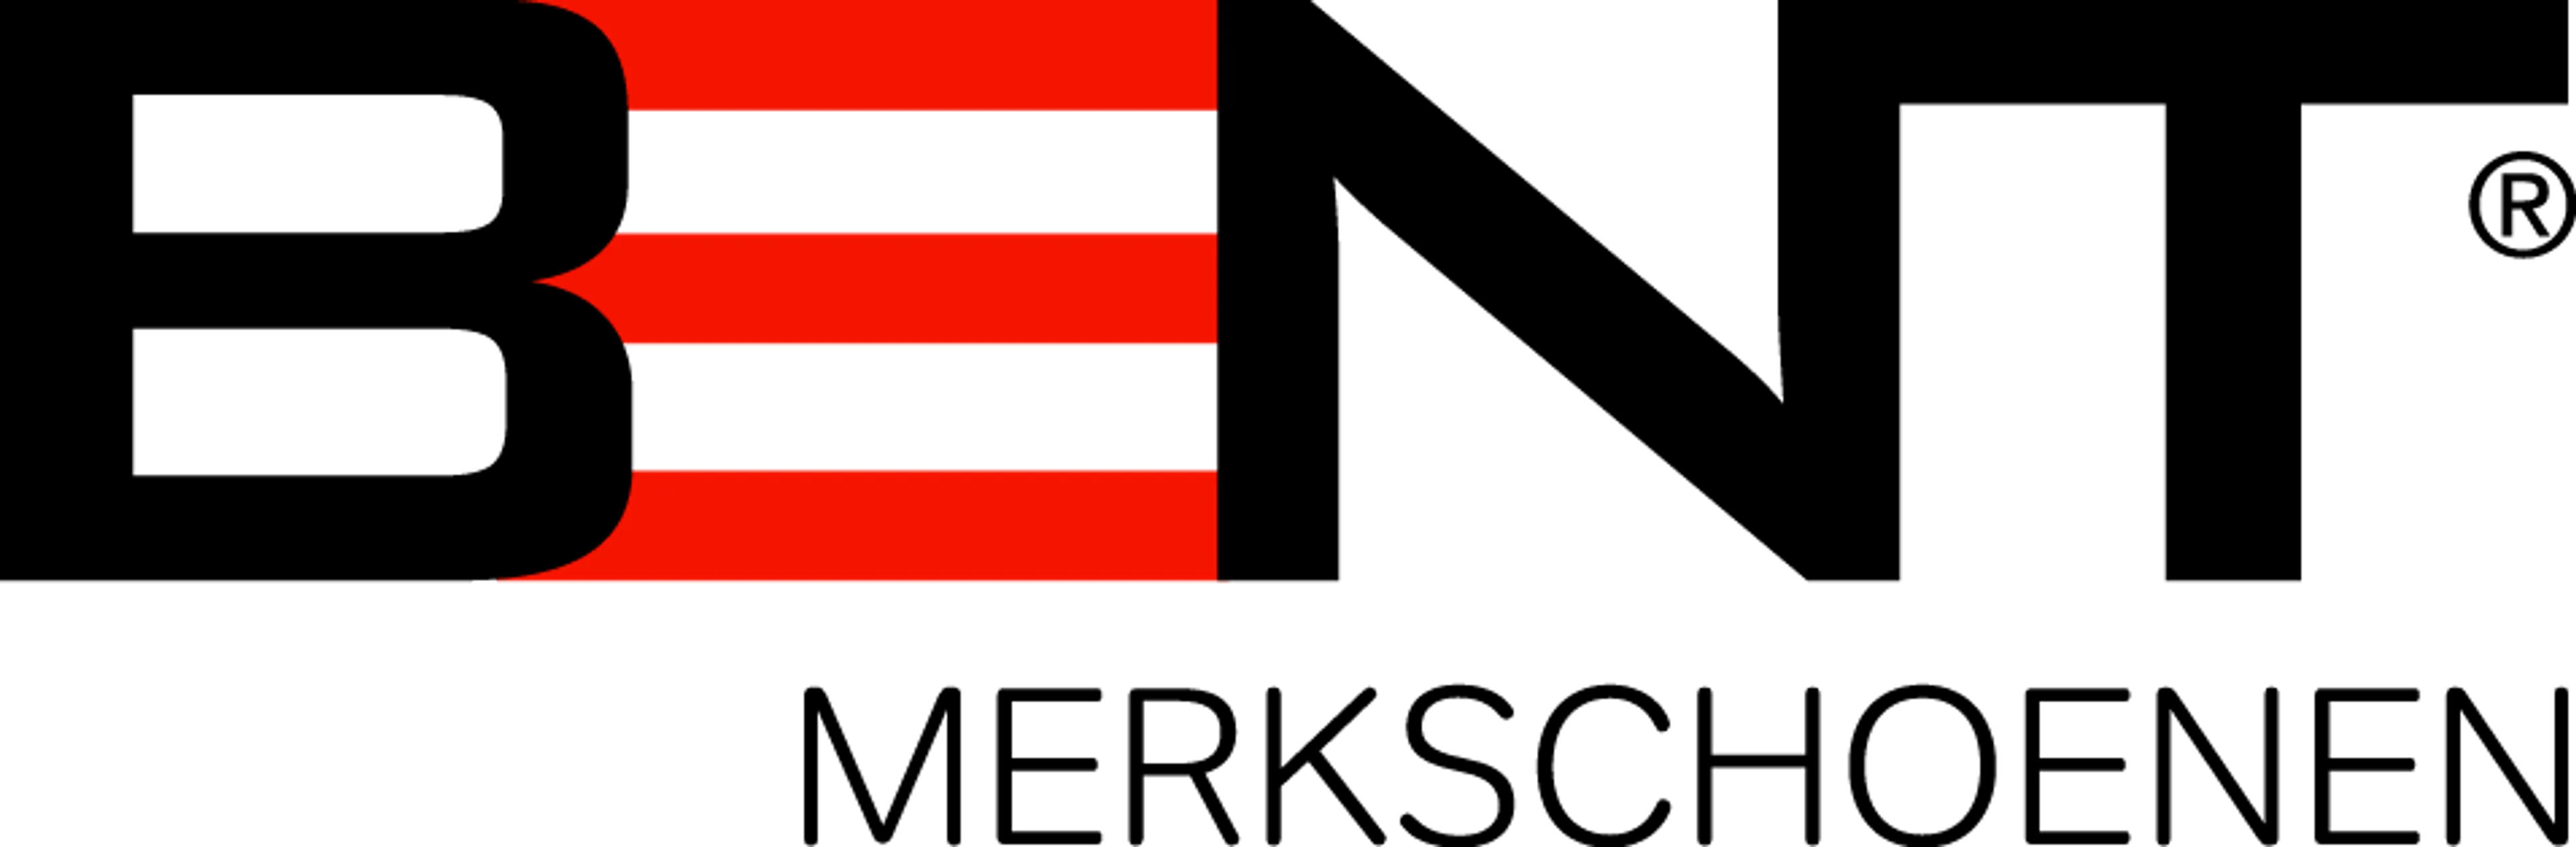 BENT logo